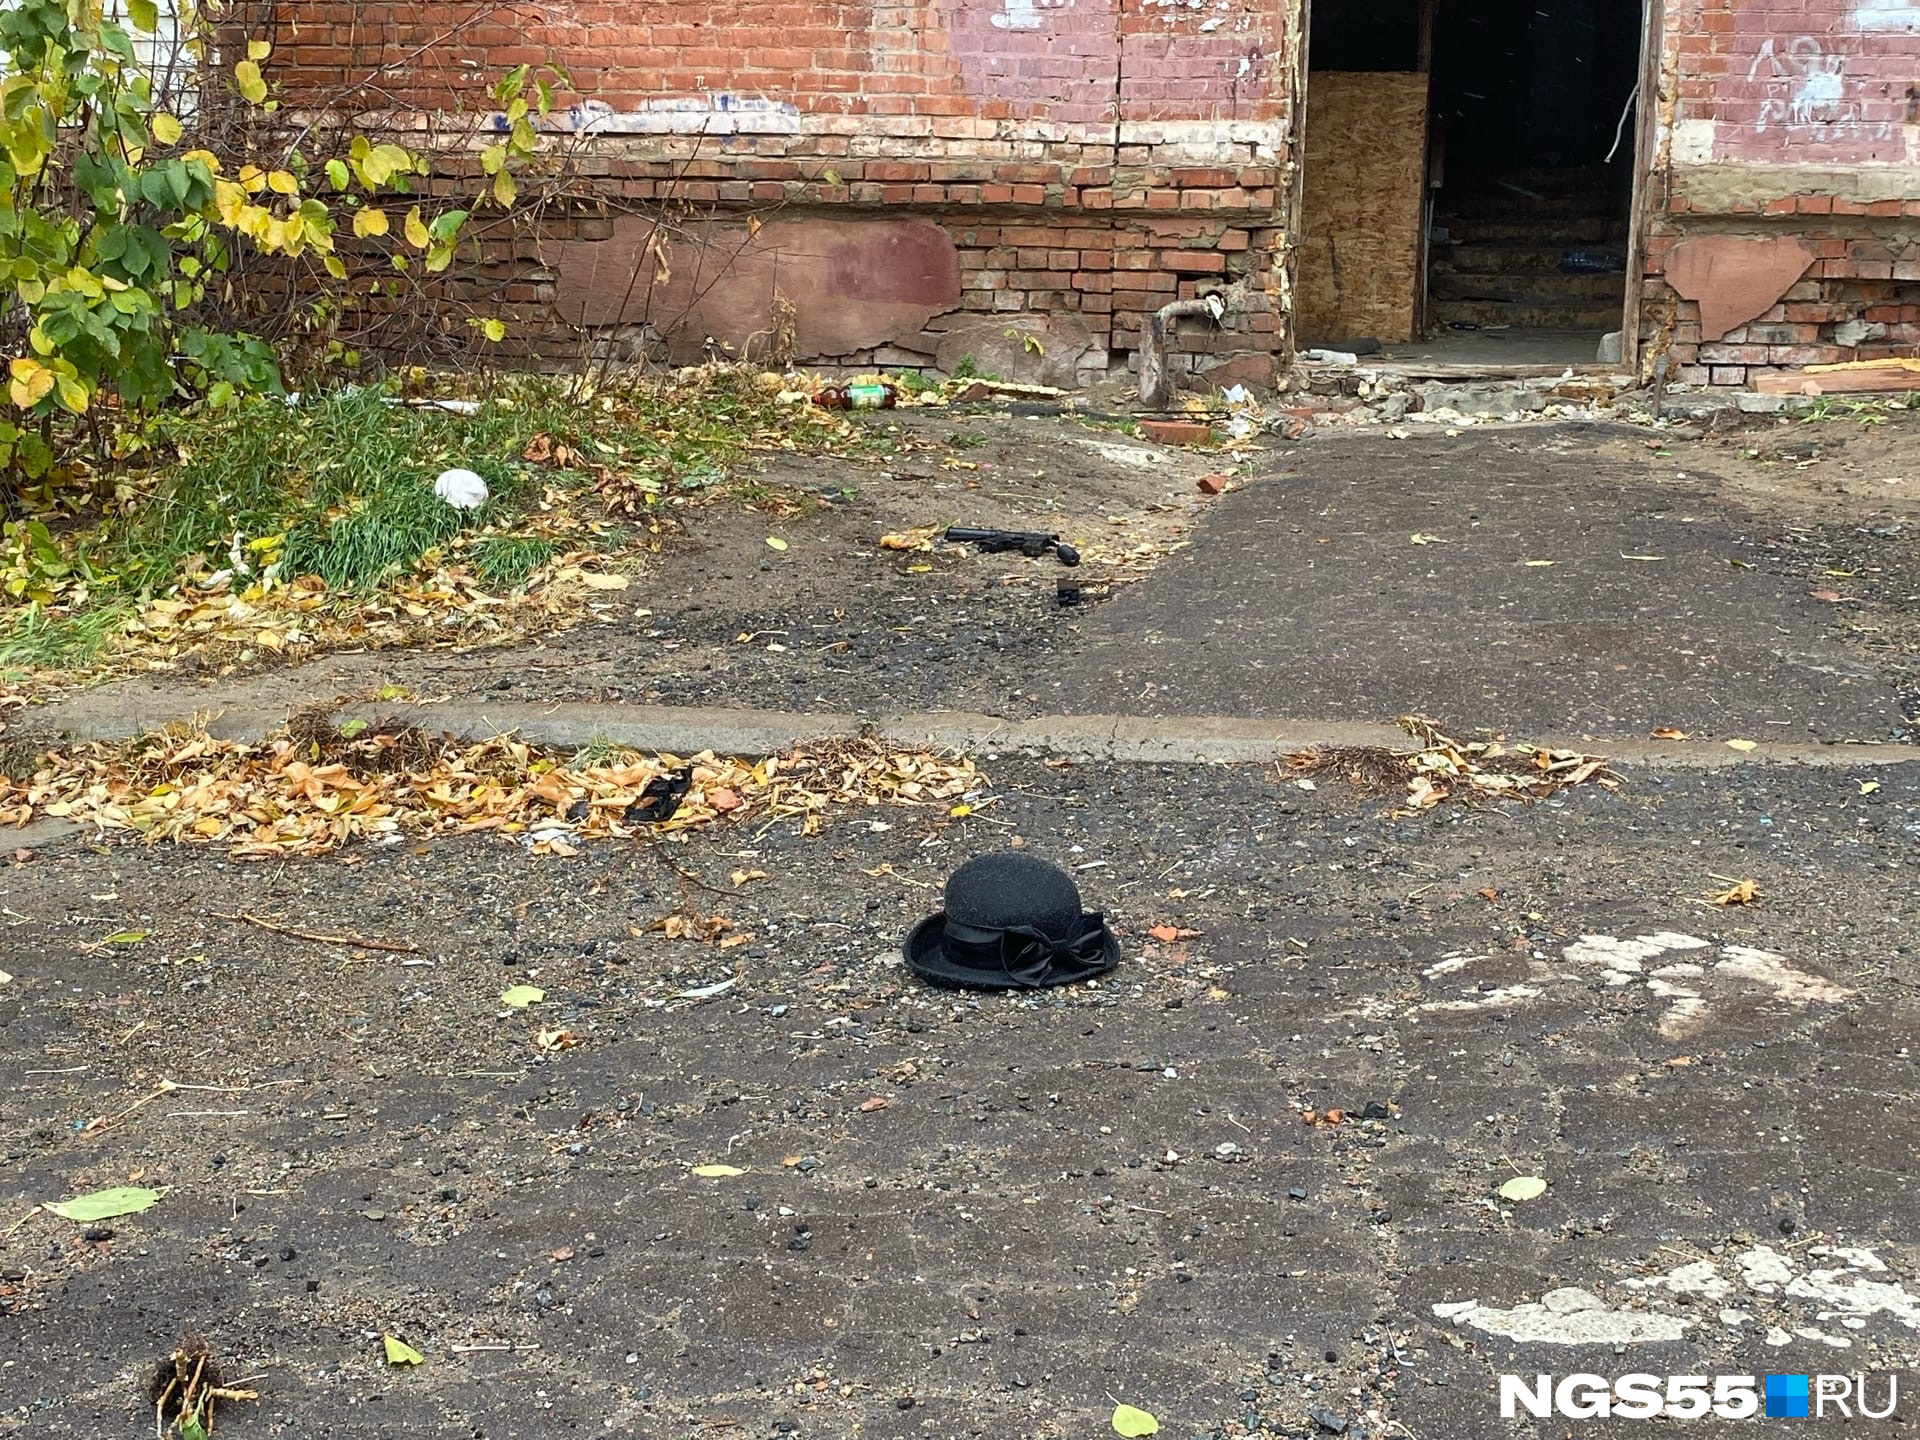 Вот такая одинокая шляпка лежит возле одного из разрушенных подъездов пятиэтажки. Интересно, забыли или специально оставили на память?